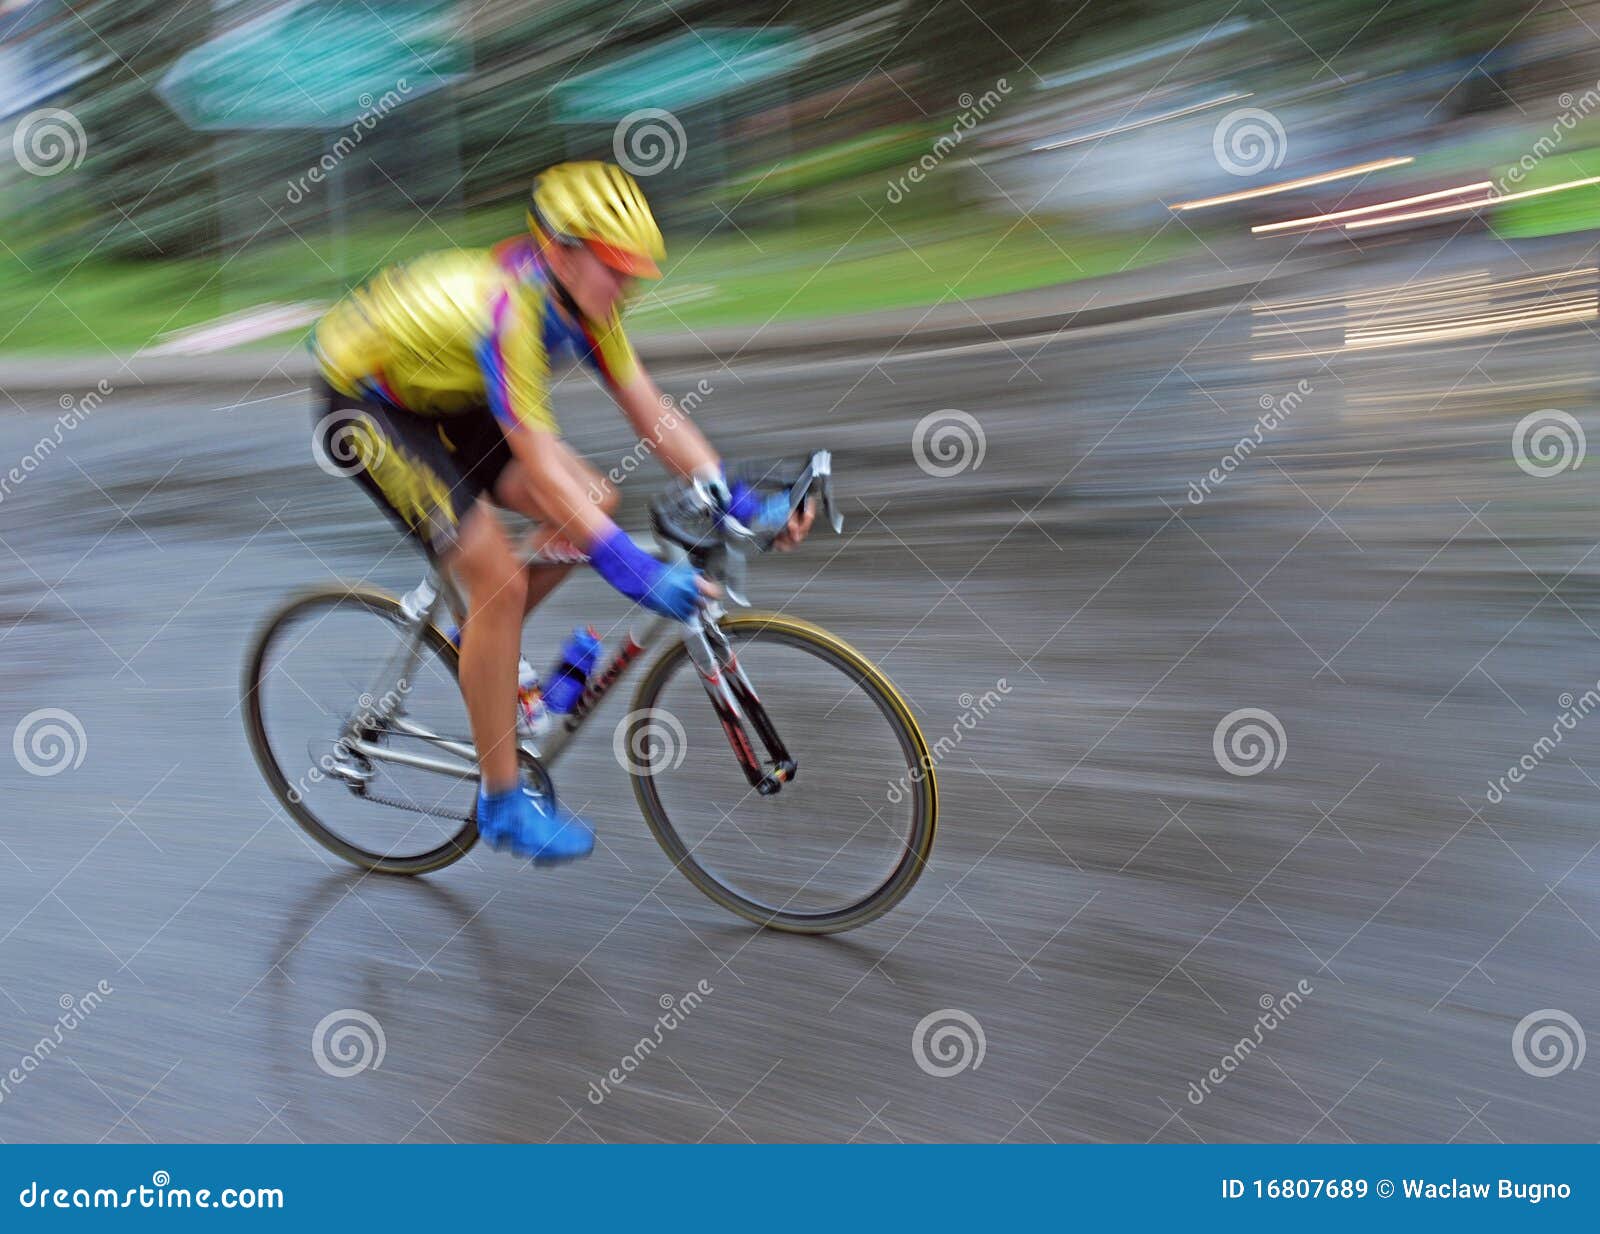 speedy bicyclist